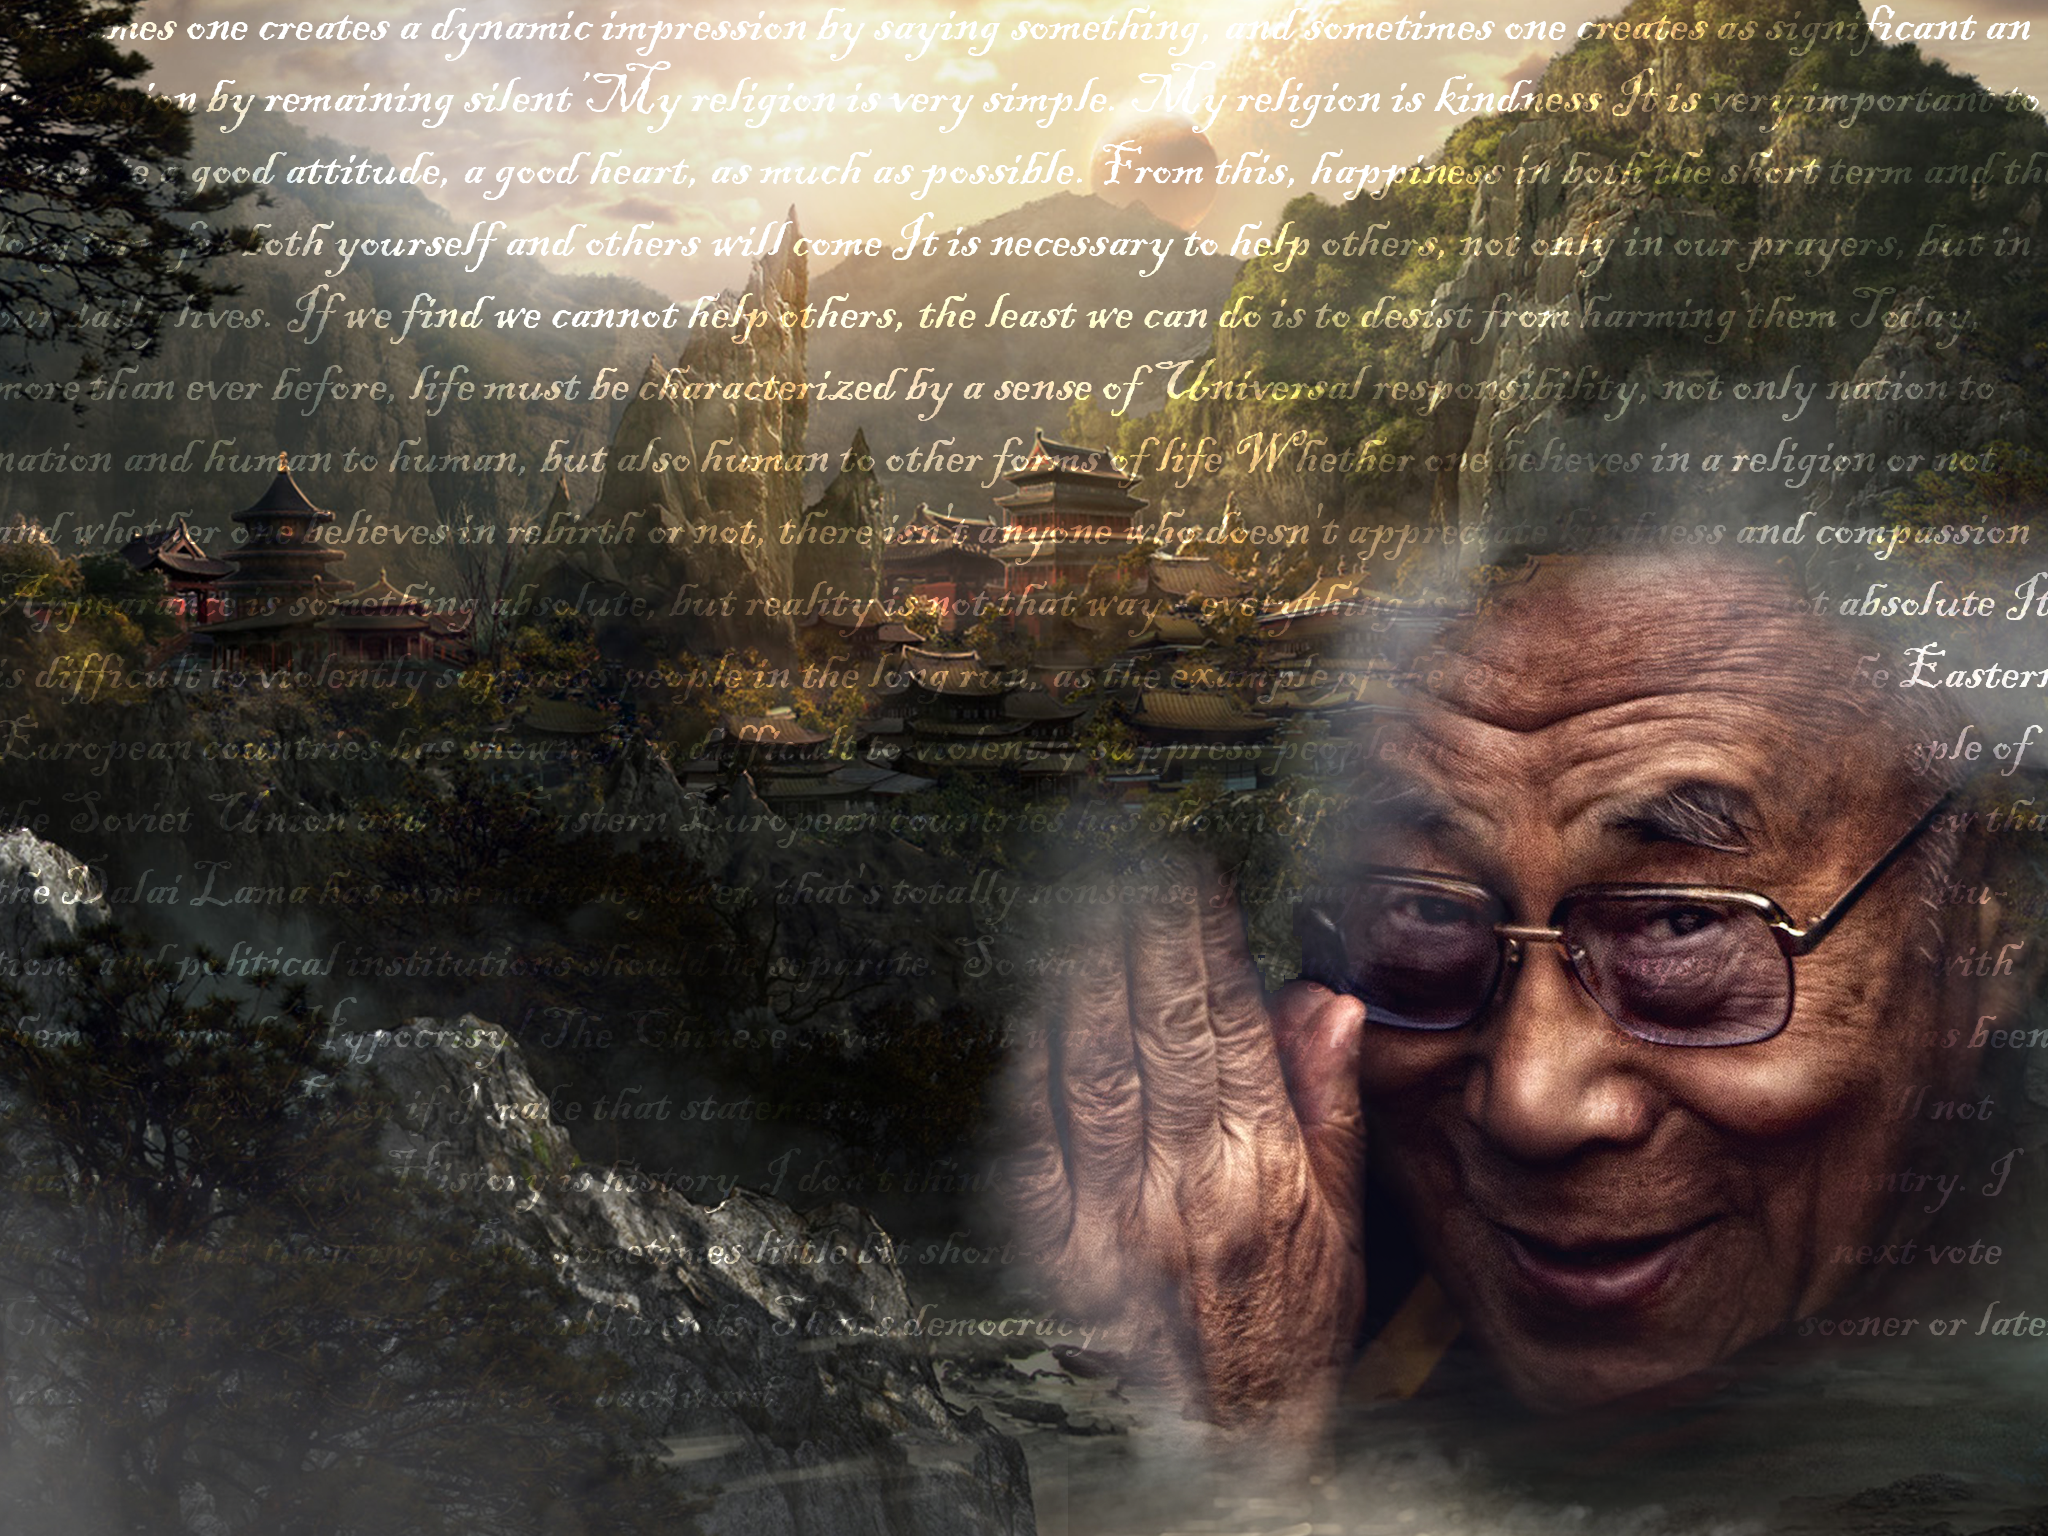 Dalai Lama iPad Wallpaper By Bradsdesigns